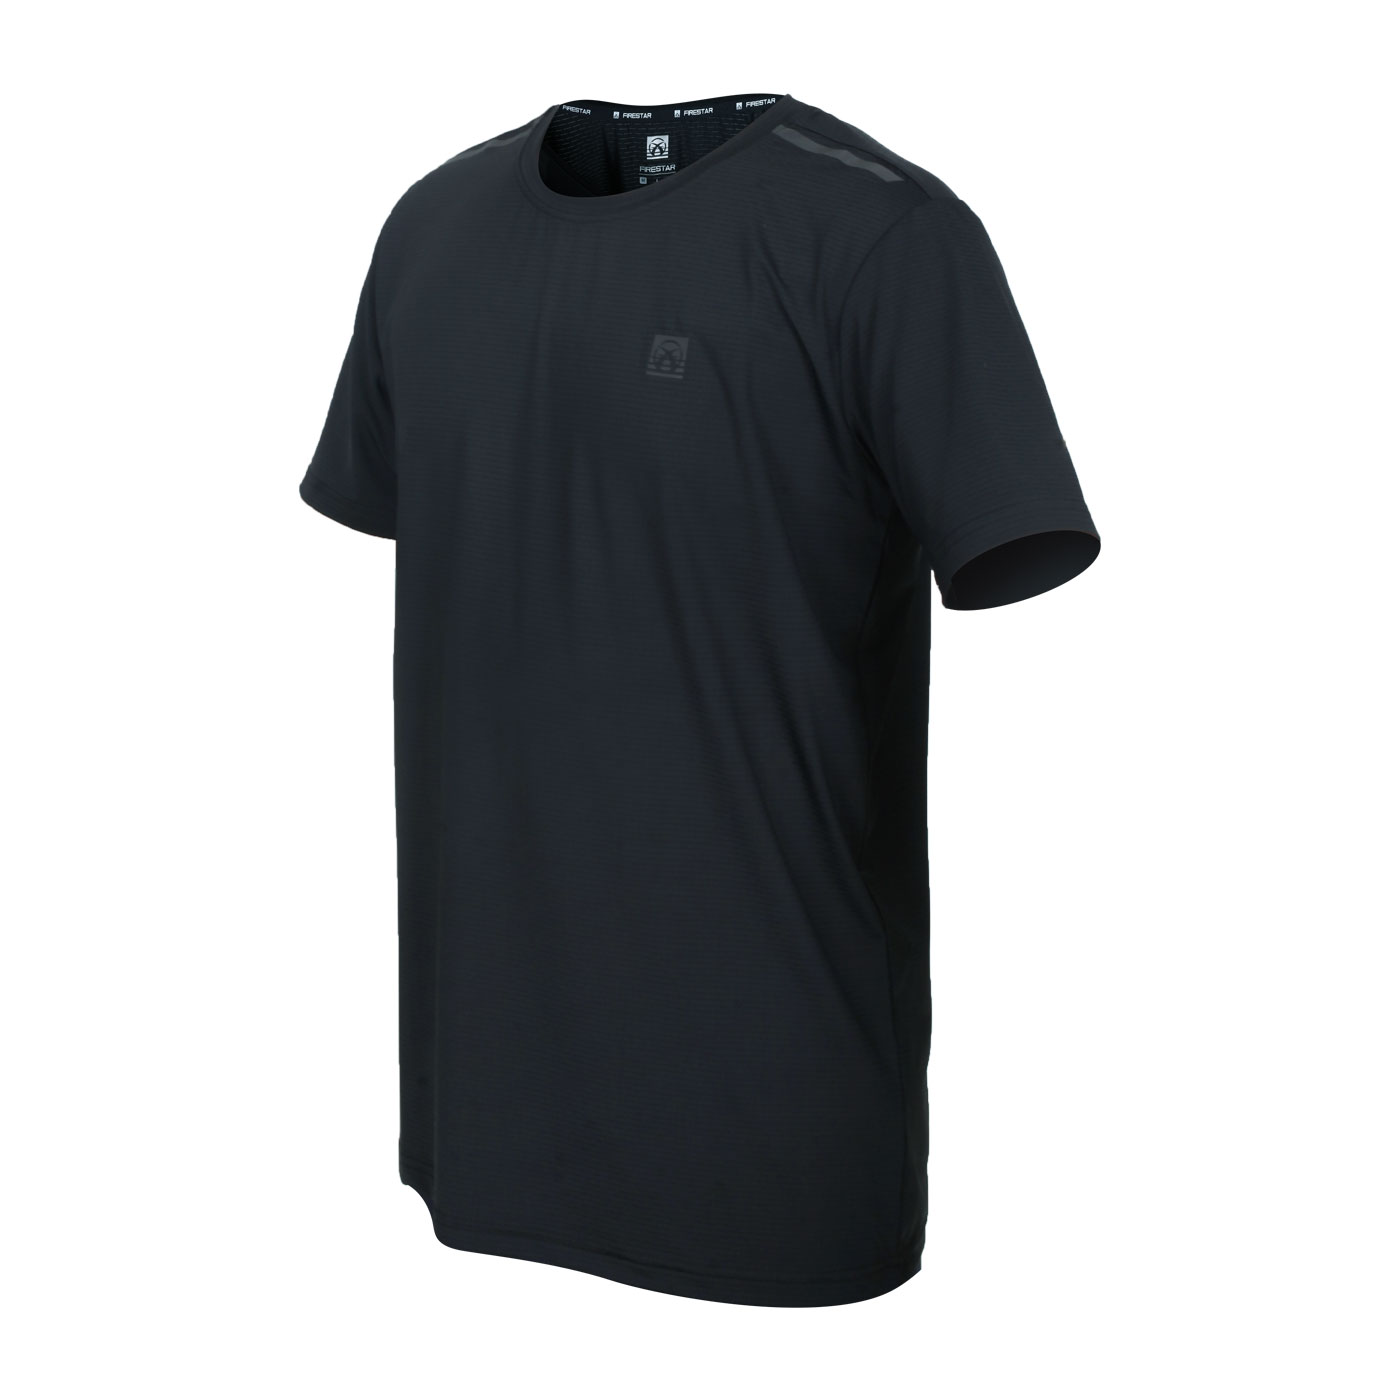 FIRESTAR 男款彈性機能圓領短袖T恤 D1732-10 - 黑灰